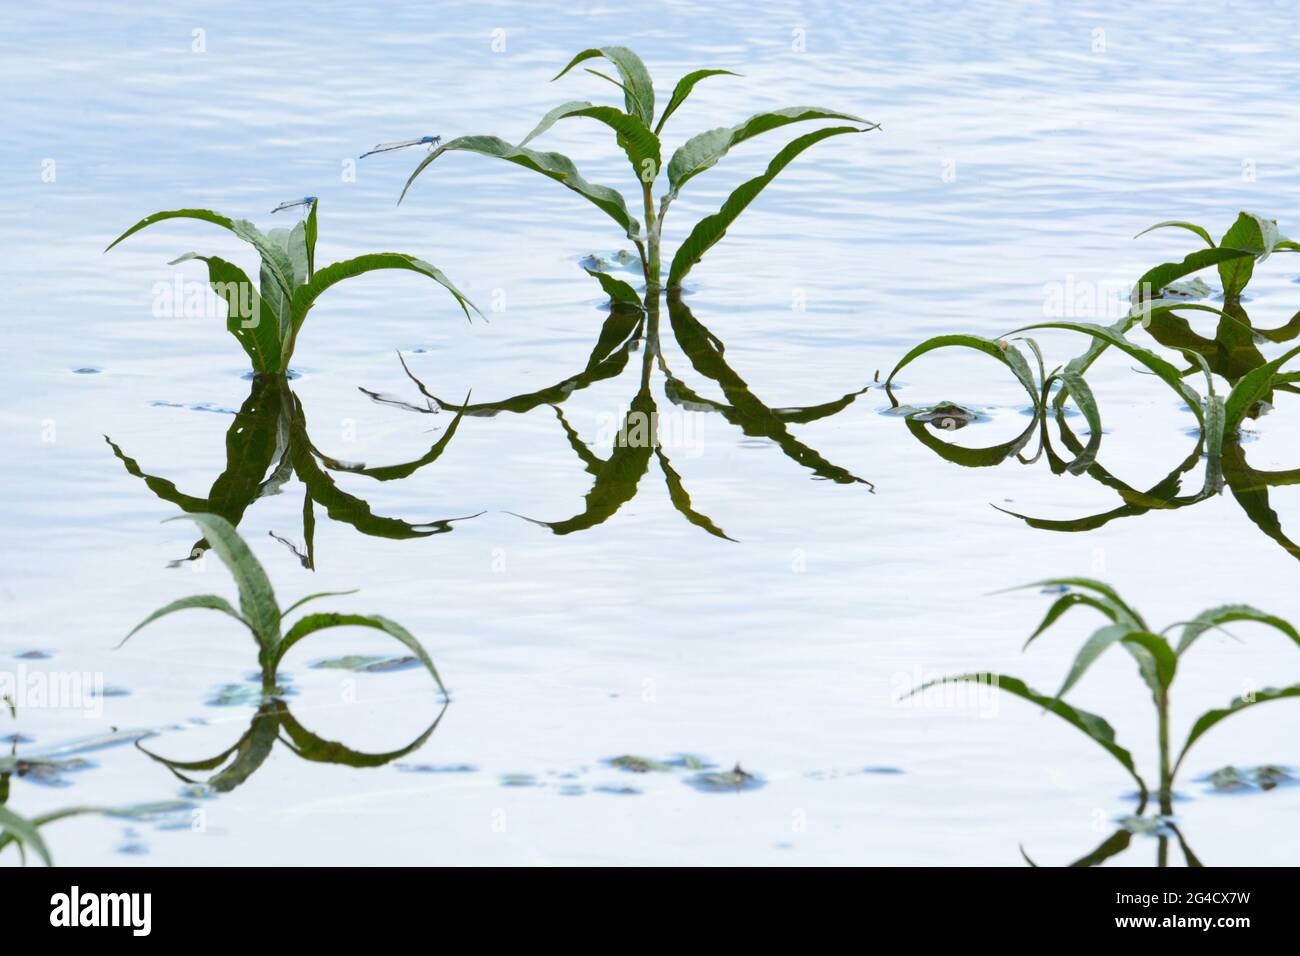 Die grünen Triebe der Blätter, auf denen die gewöhnlichen blauen Damselfliegen mit den Reflexen im See ruhen Stockfoto